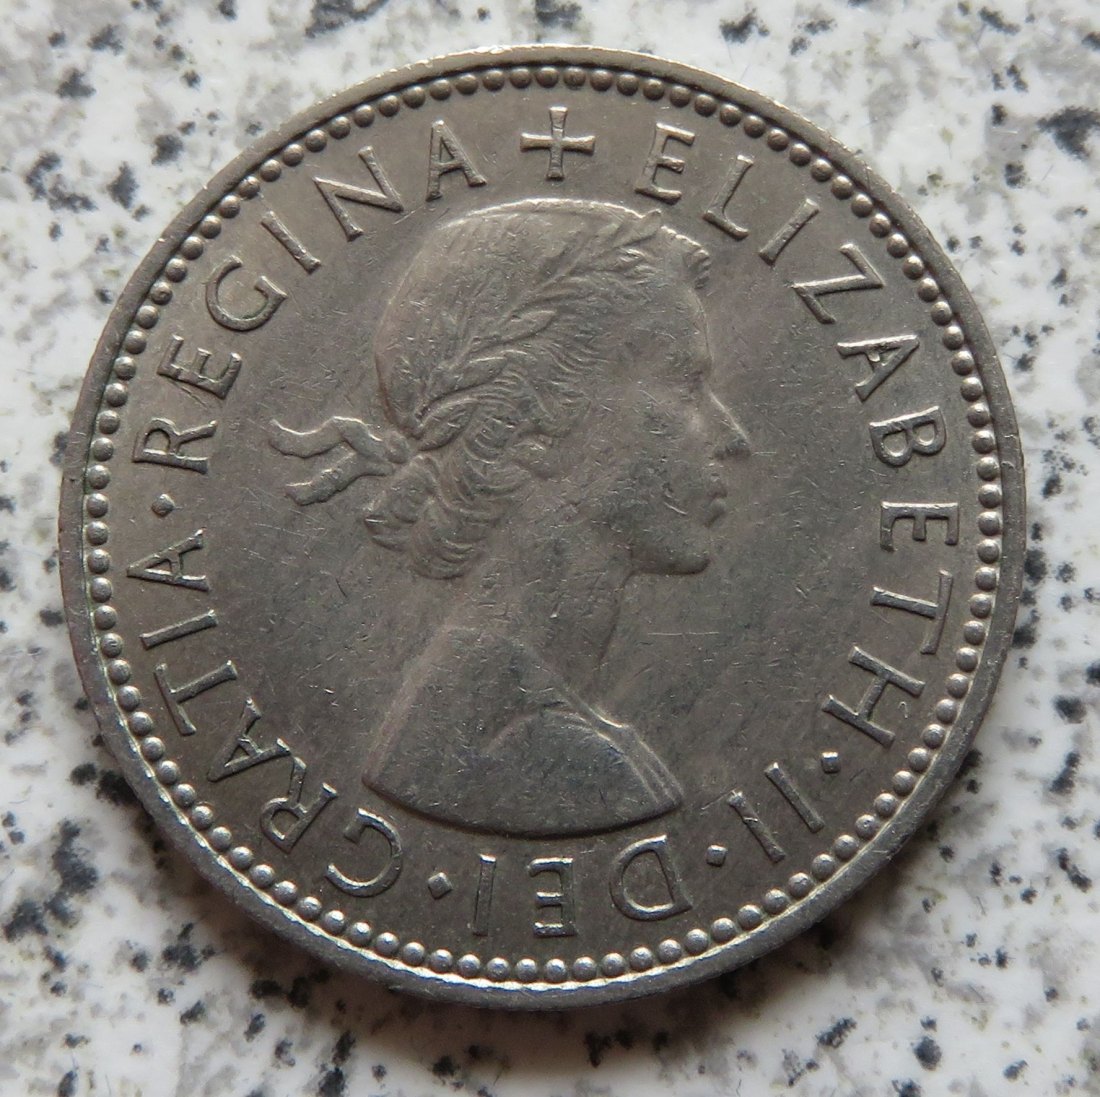  Großbritannien 1 Shilling 1959, Englisch (4)   